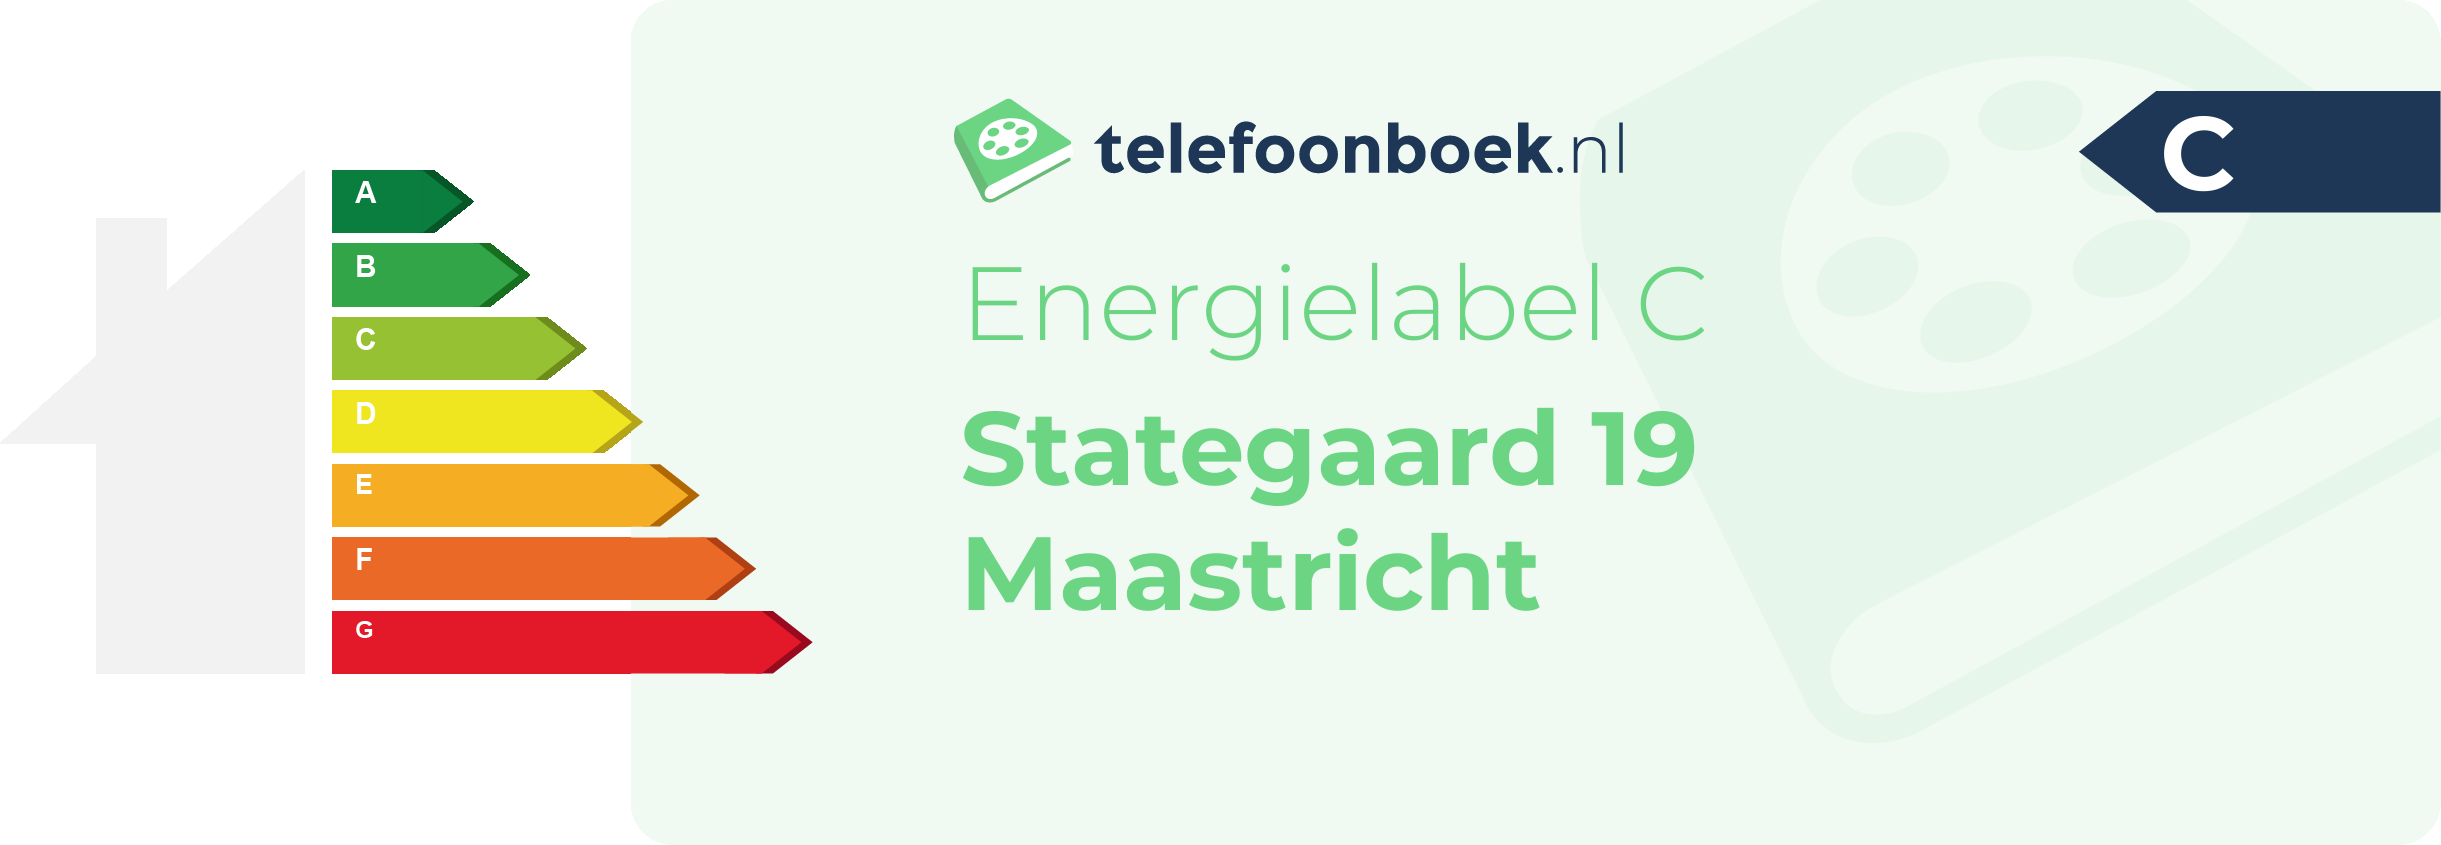 Energielabel Stategaard 19 Maastricht